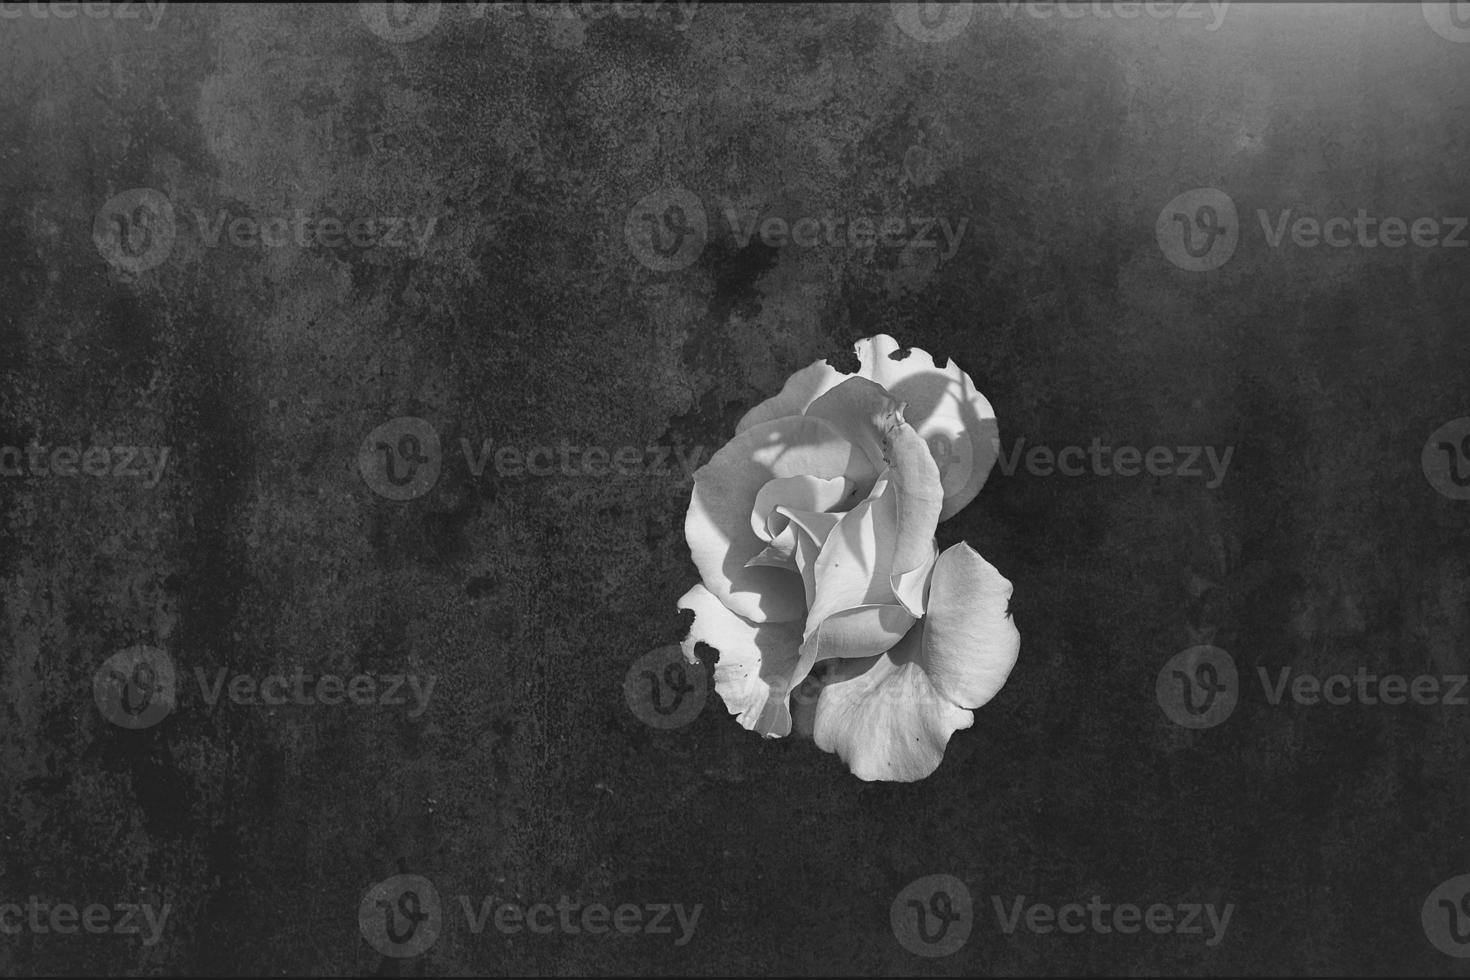 delicaat wit roos in de tuin tegen een donker achtergrond in de stralen van de zon foto